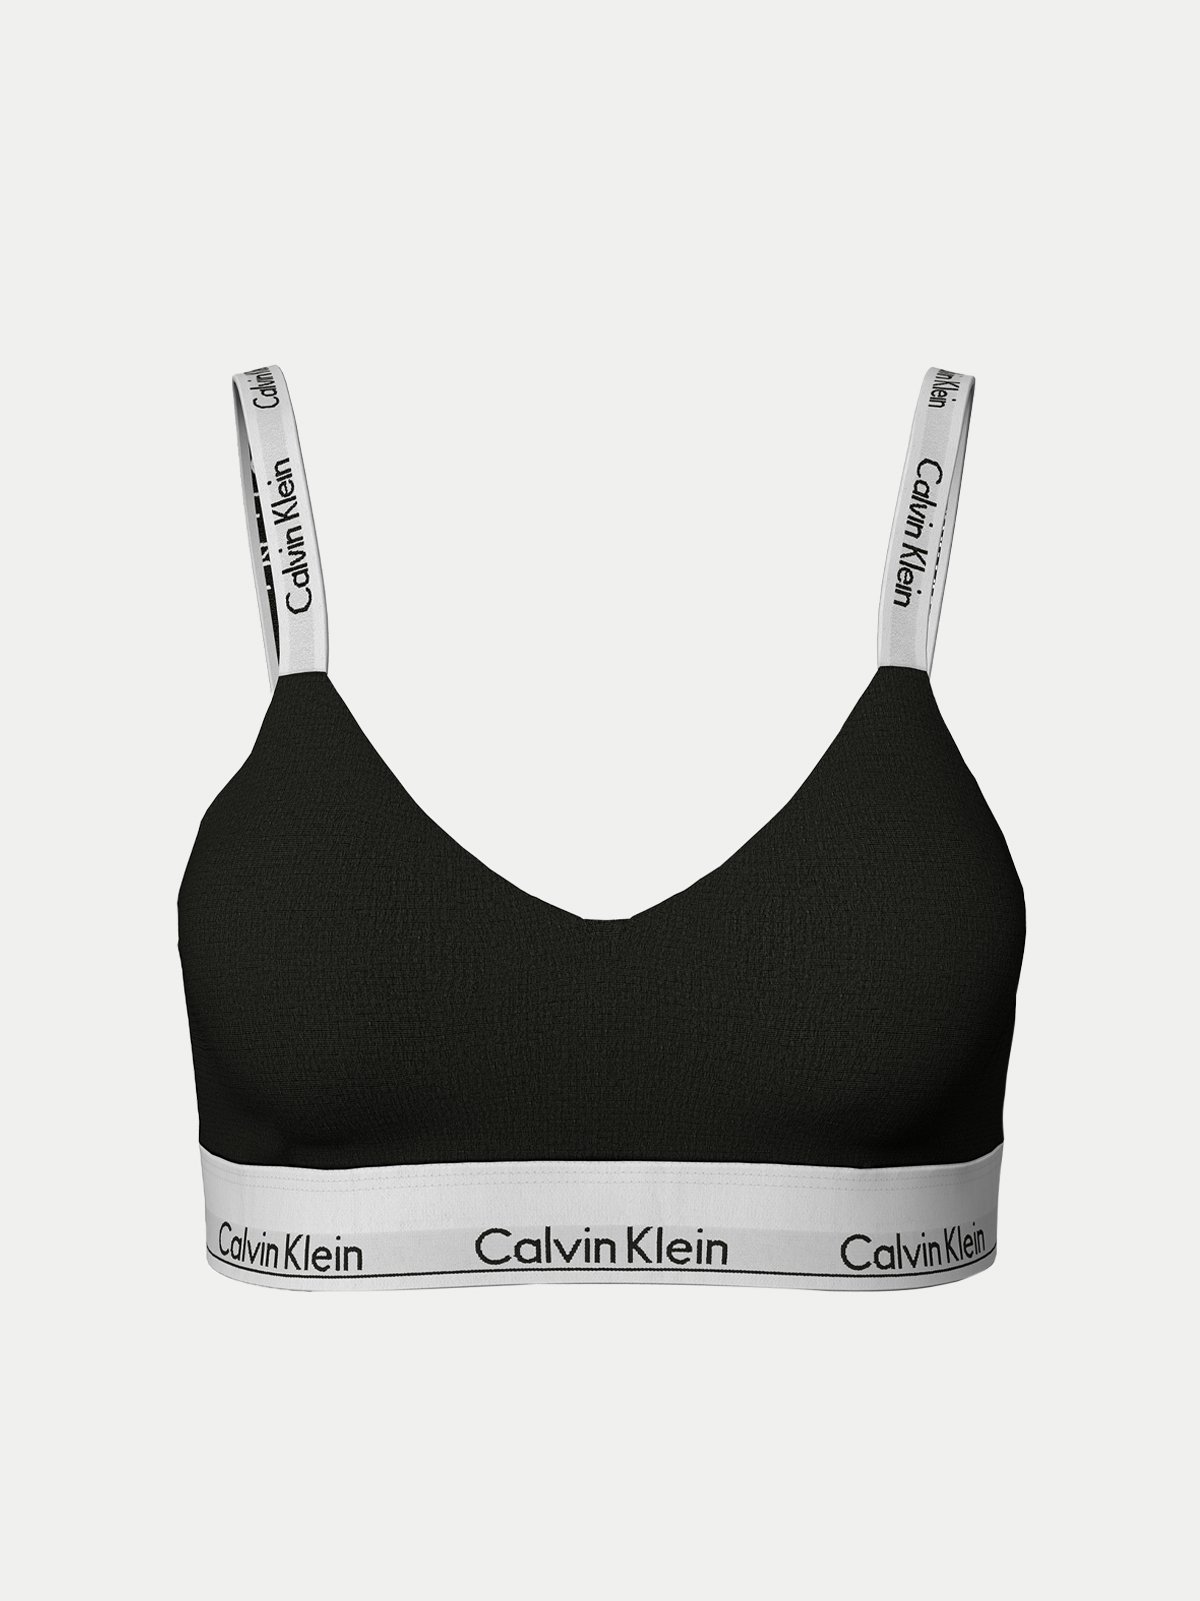 Women's bra black Calvin Klein Underwear